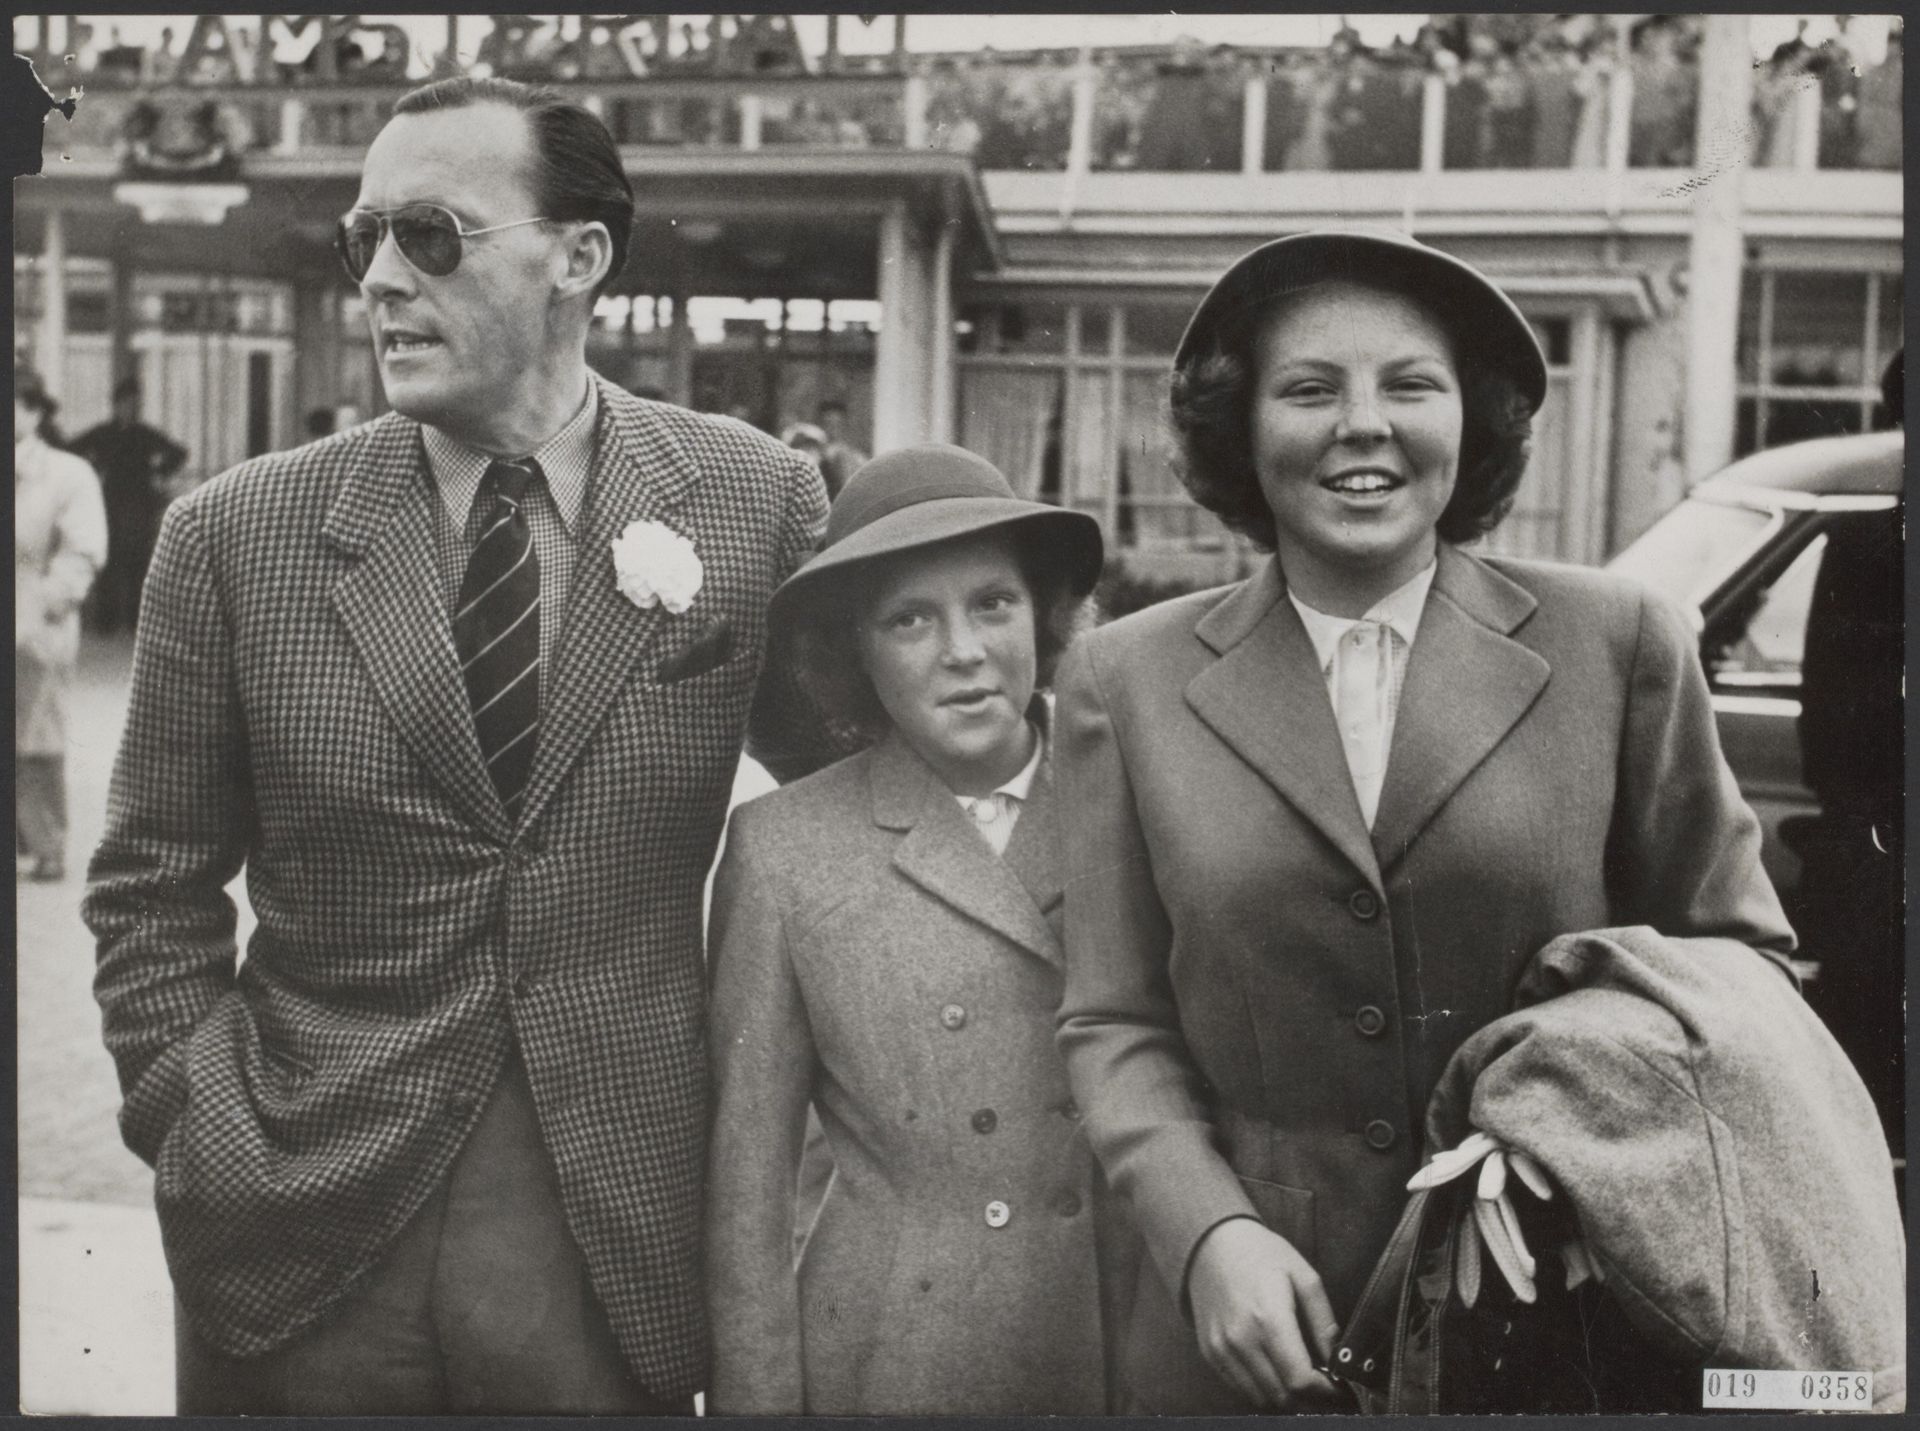 Augustus 1953: prinses Irene te midden van haar vader prins Bernhard en haar zus prinses Beatrix. De